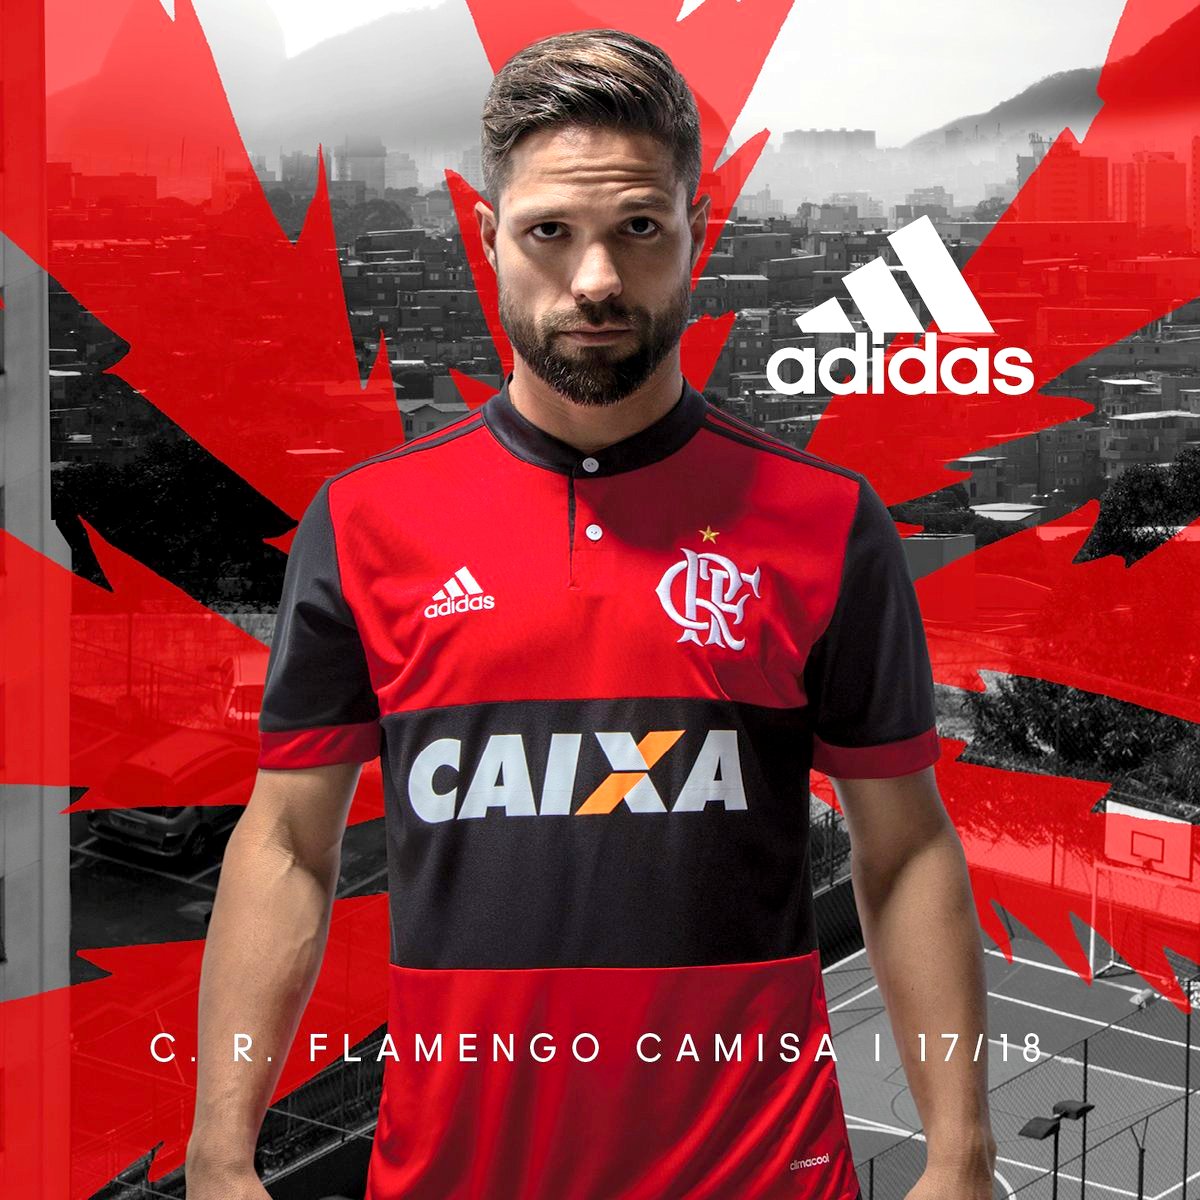 Kits FTS y DLS NICARAGUA: Flamengo nueva camisa 2017/18